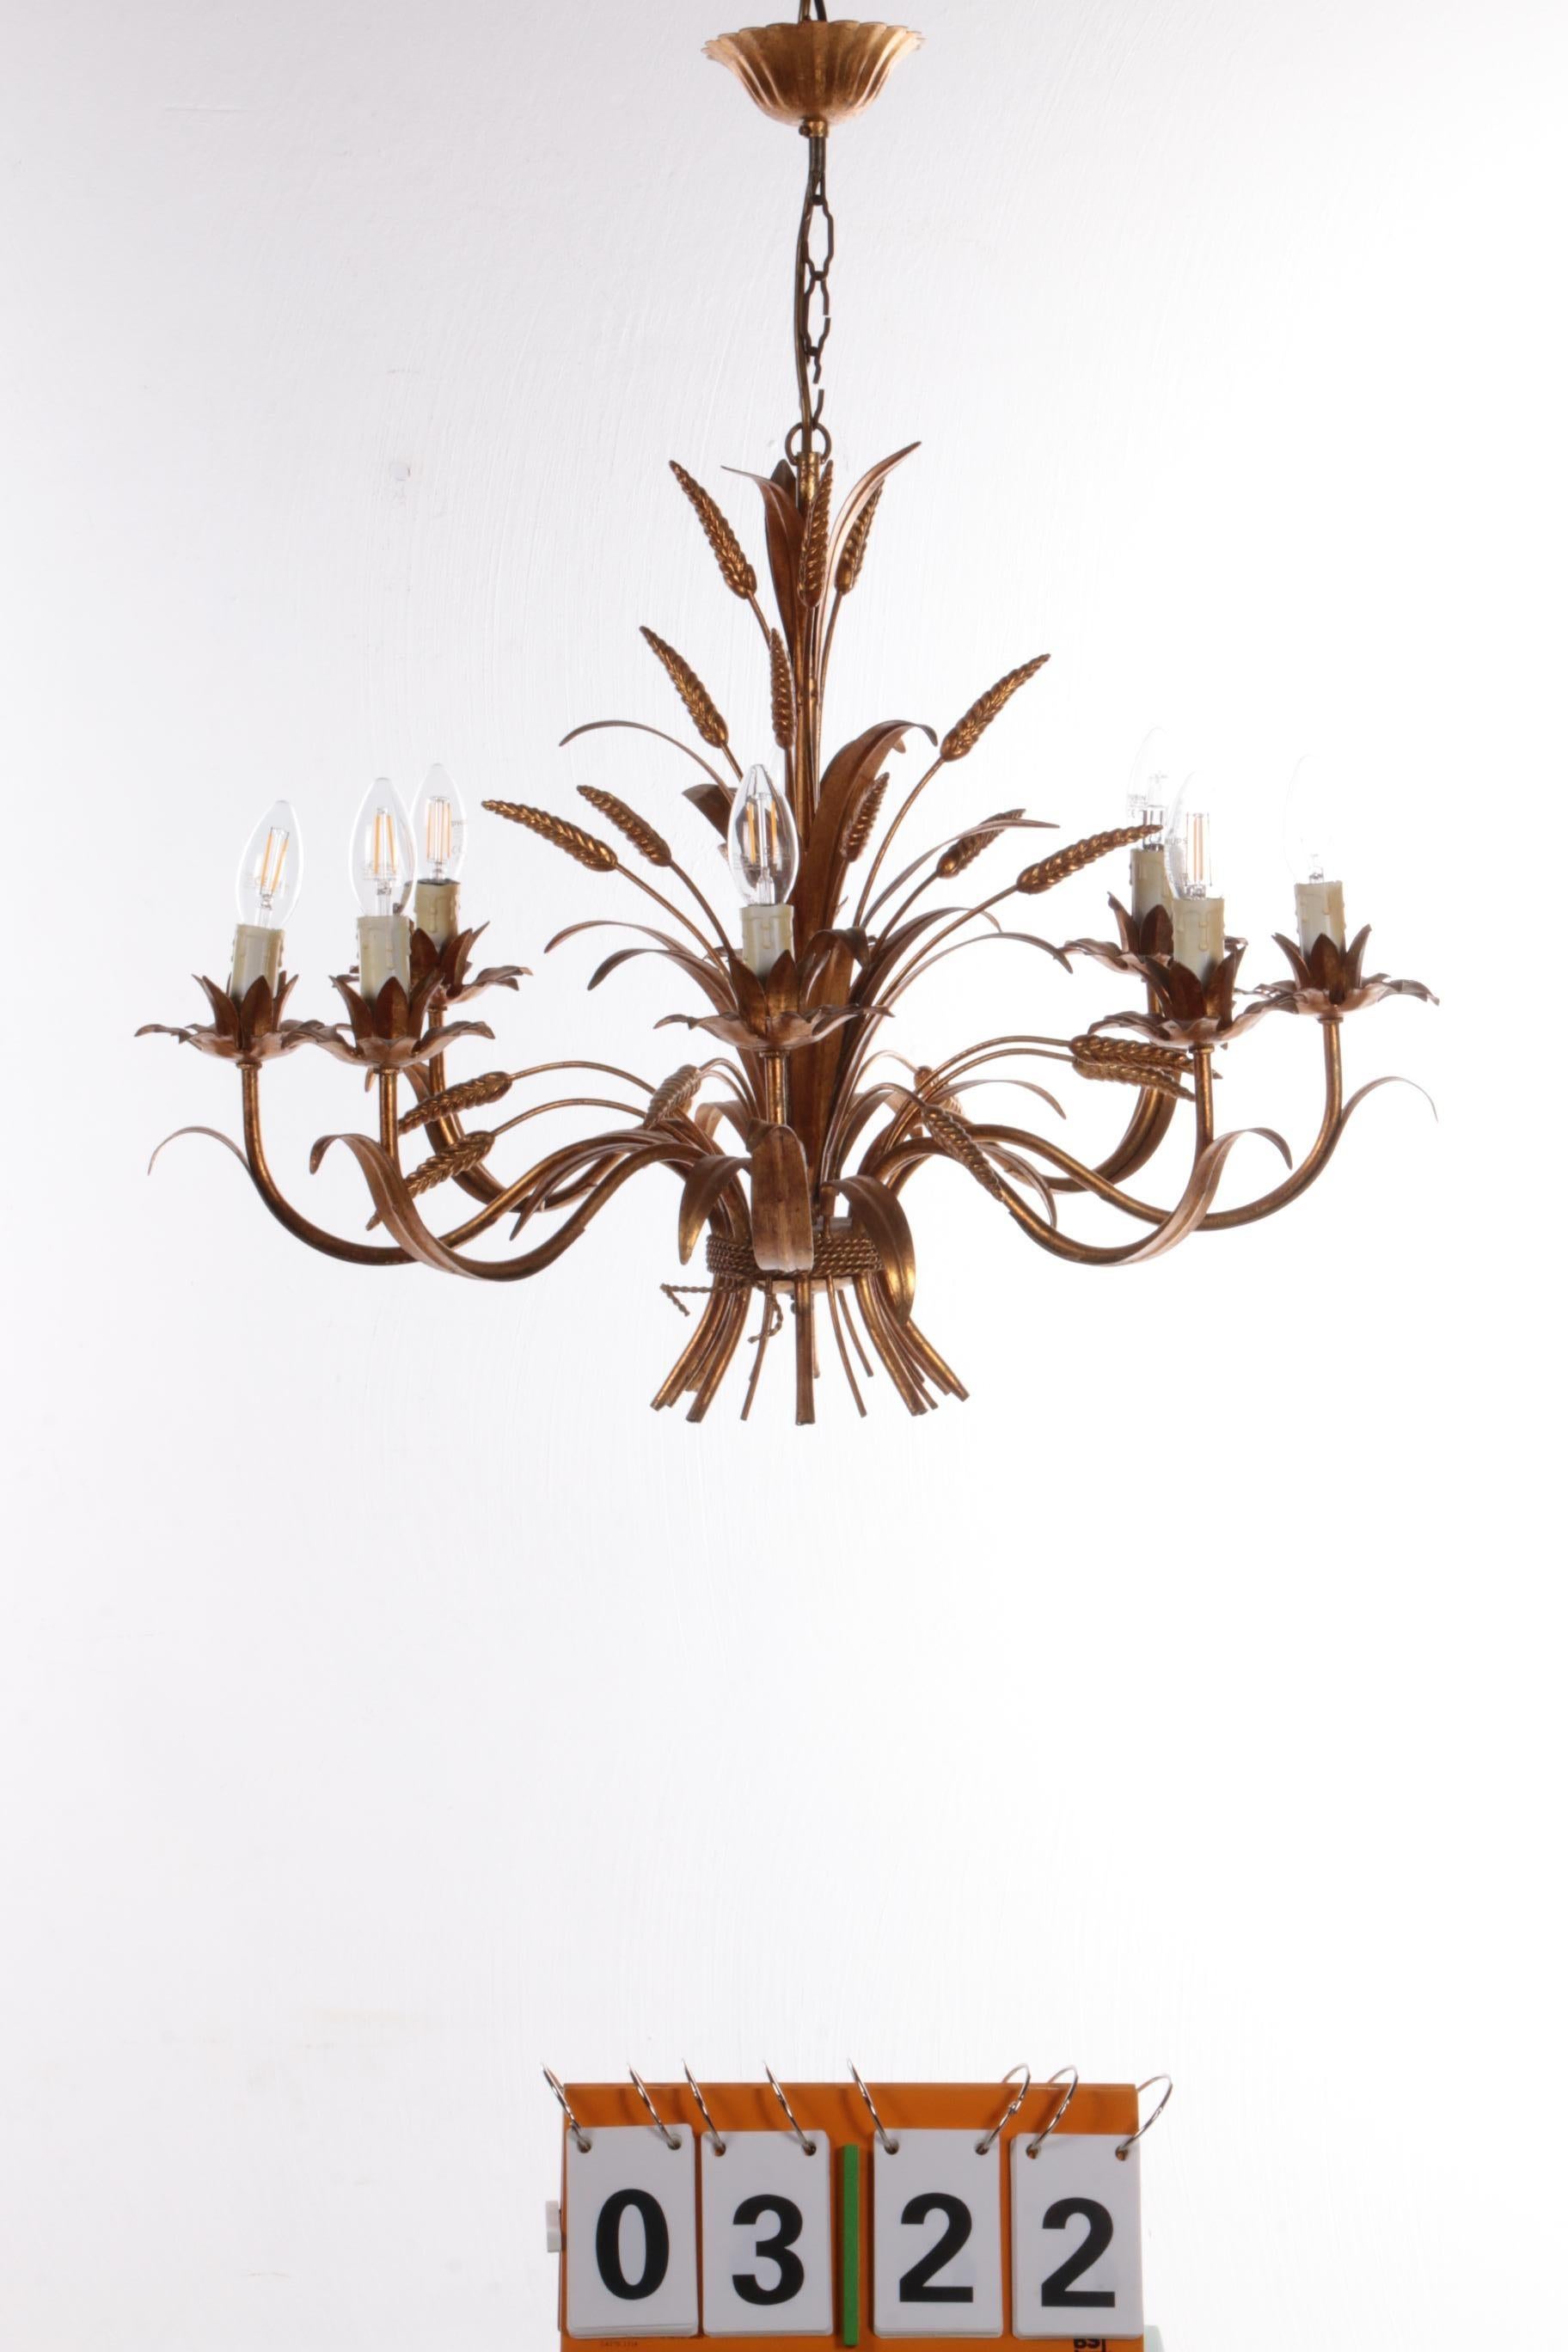 Grande lampe suspendue design par Hans Kogl, 1970 Italie.


Lampe suspendue de style Hollywood Regency avec épis de maïs et détails floraux. Cette belle lampe provient des années 1960 et a été conçue par Hans Kögl.

Une grande lampe à huit bras